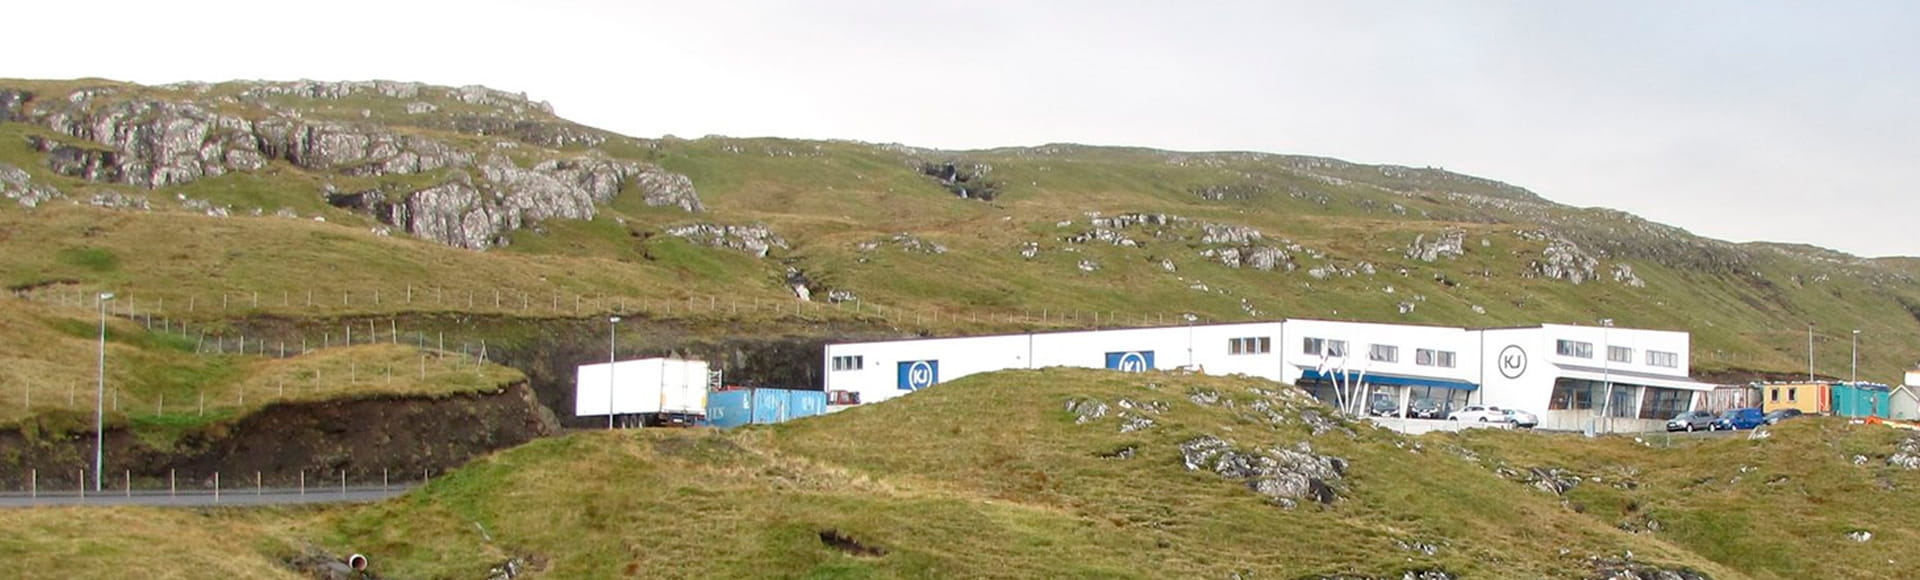 KJ - Faroe Islands